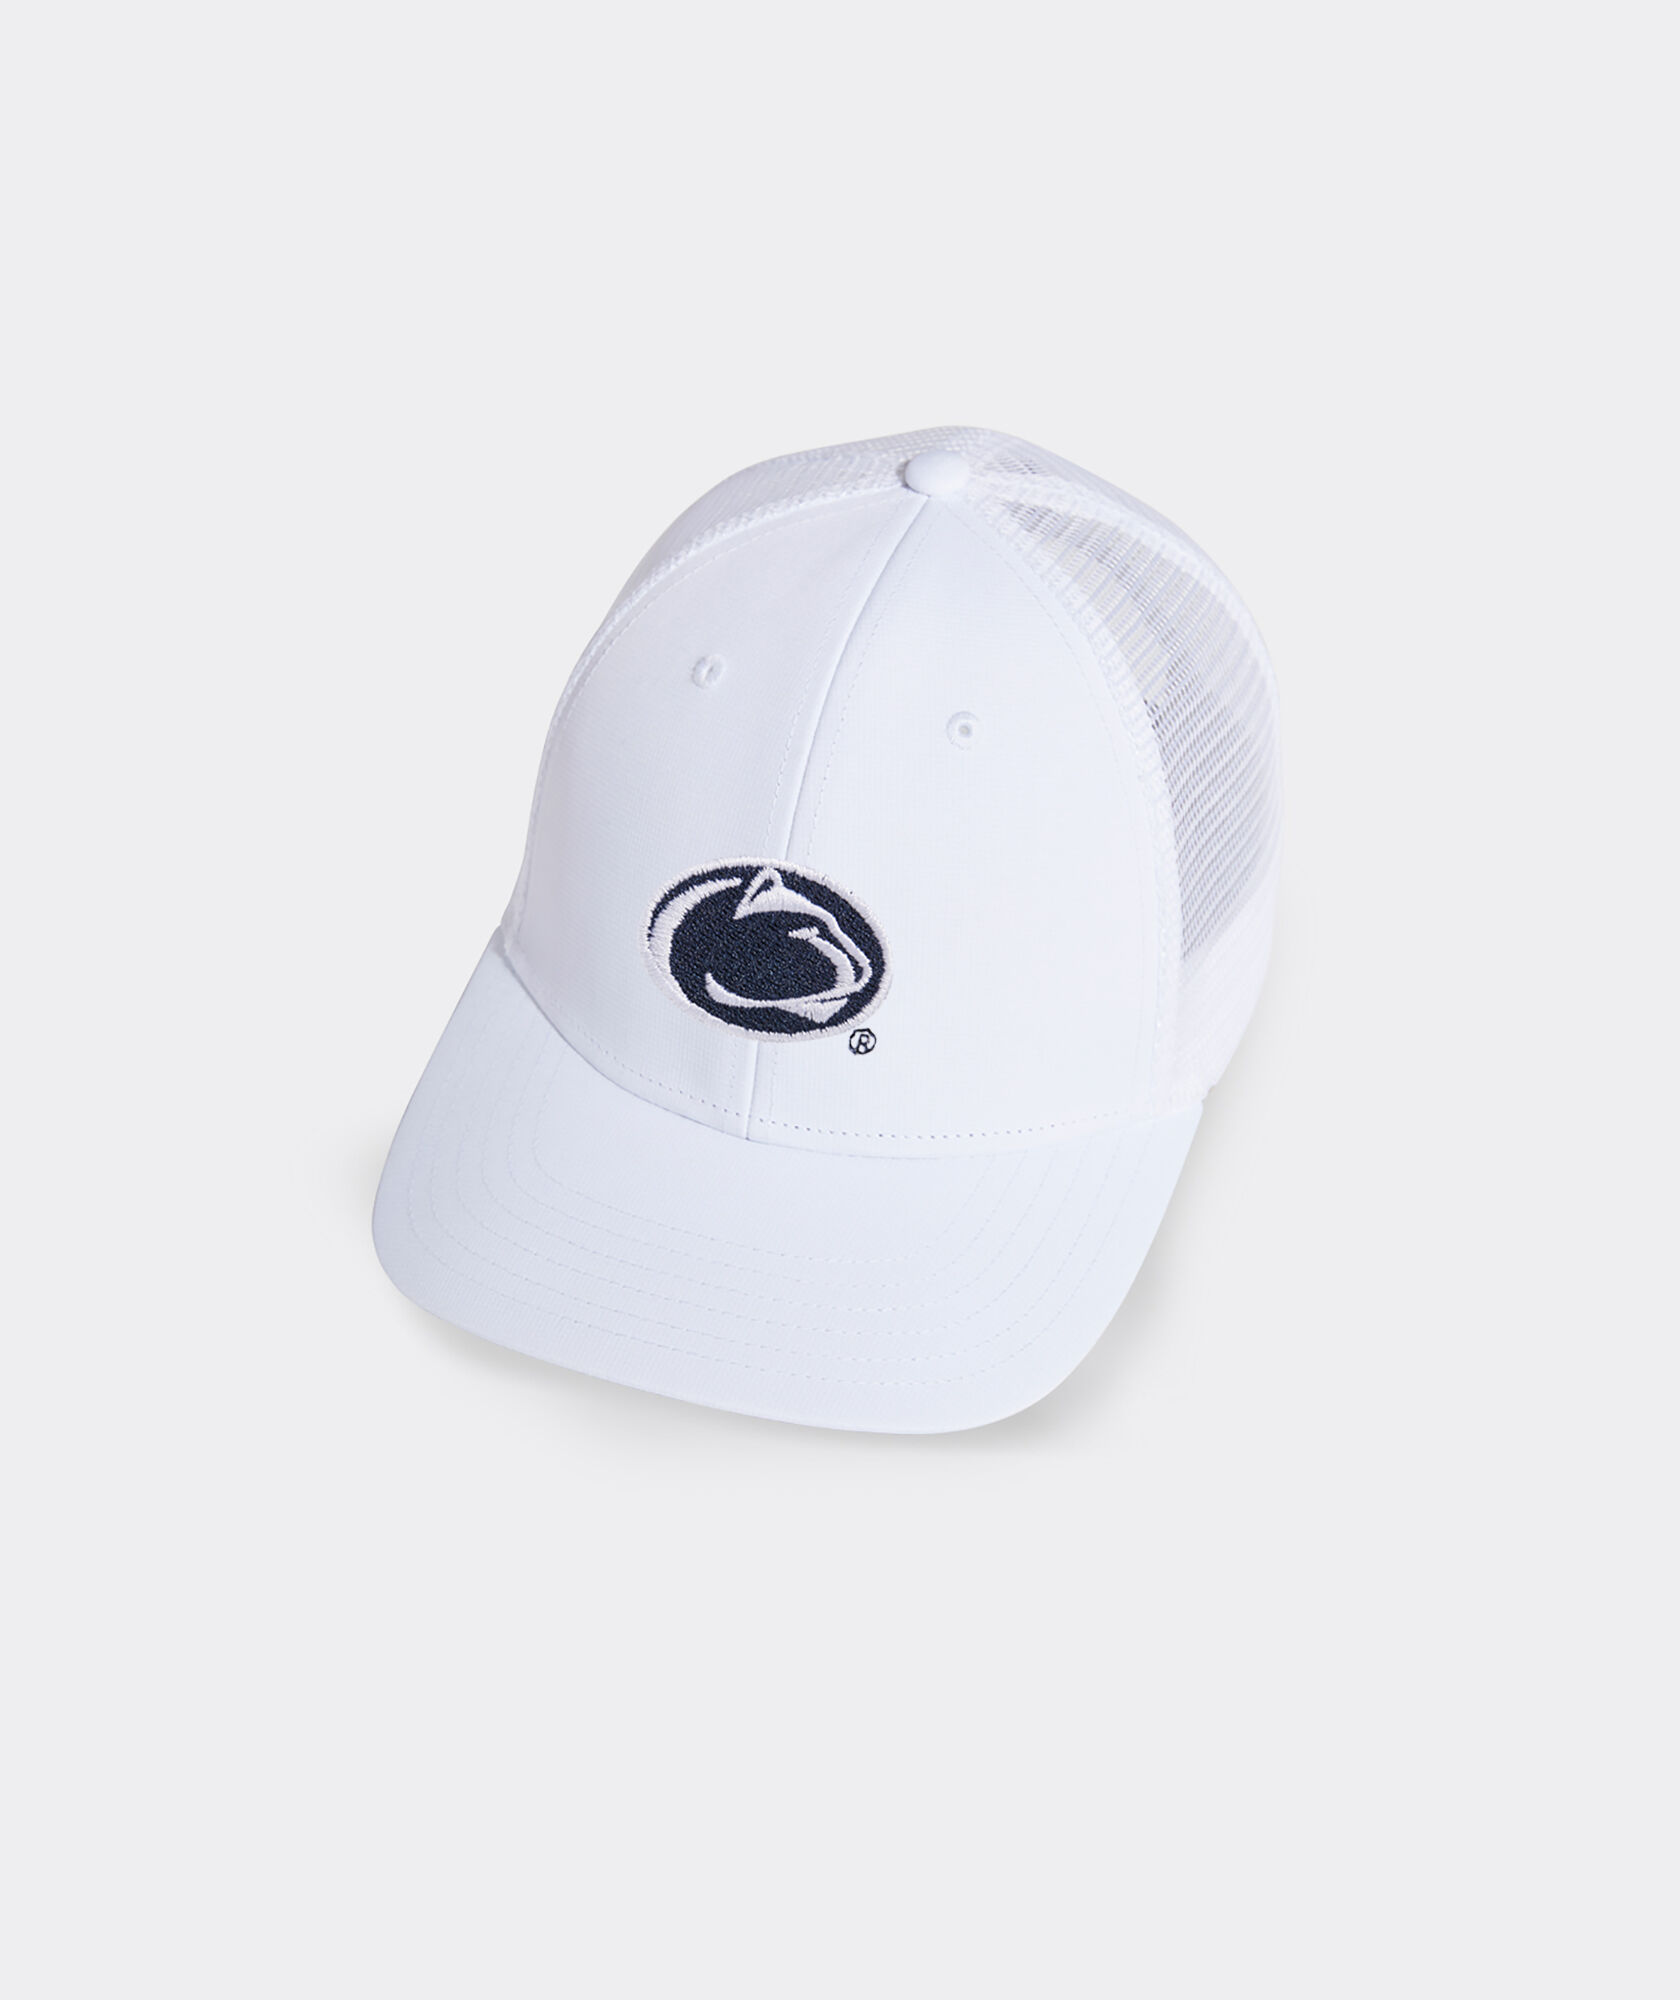 Penn State University Performance Trucker Hat